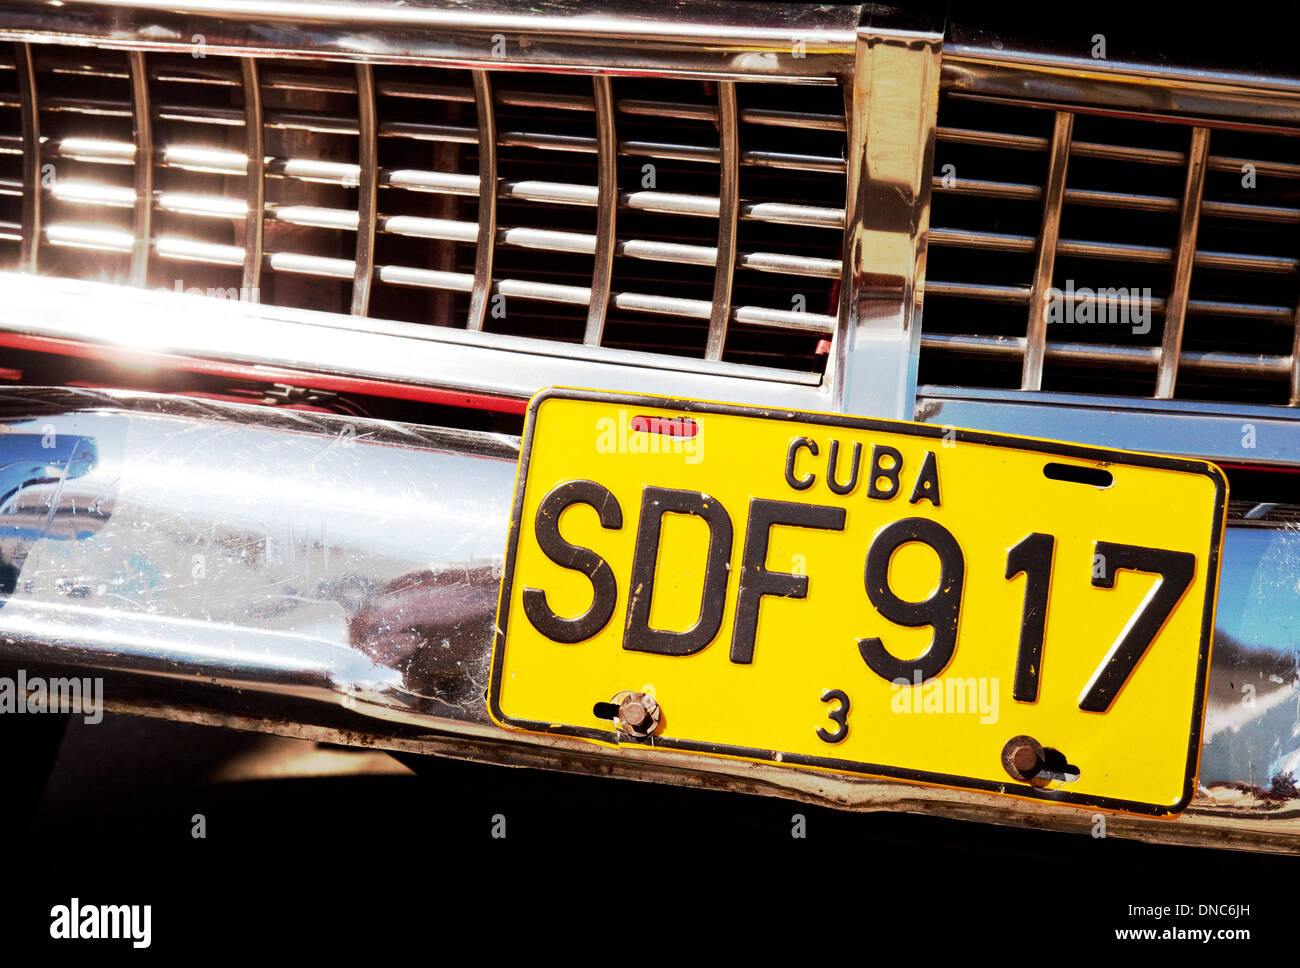 La plaque de numéro de voiture Cuba close up, Cuba Caraïbes Amérique Latine  Photo Stock - Alamy